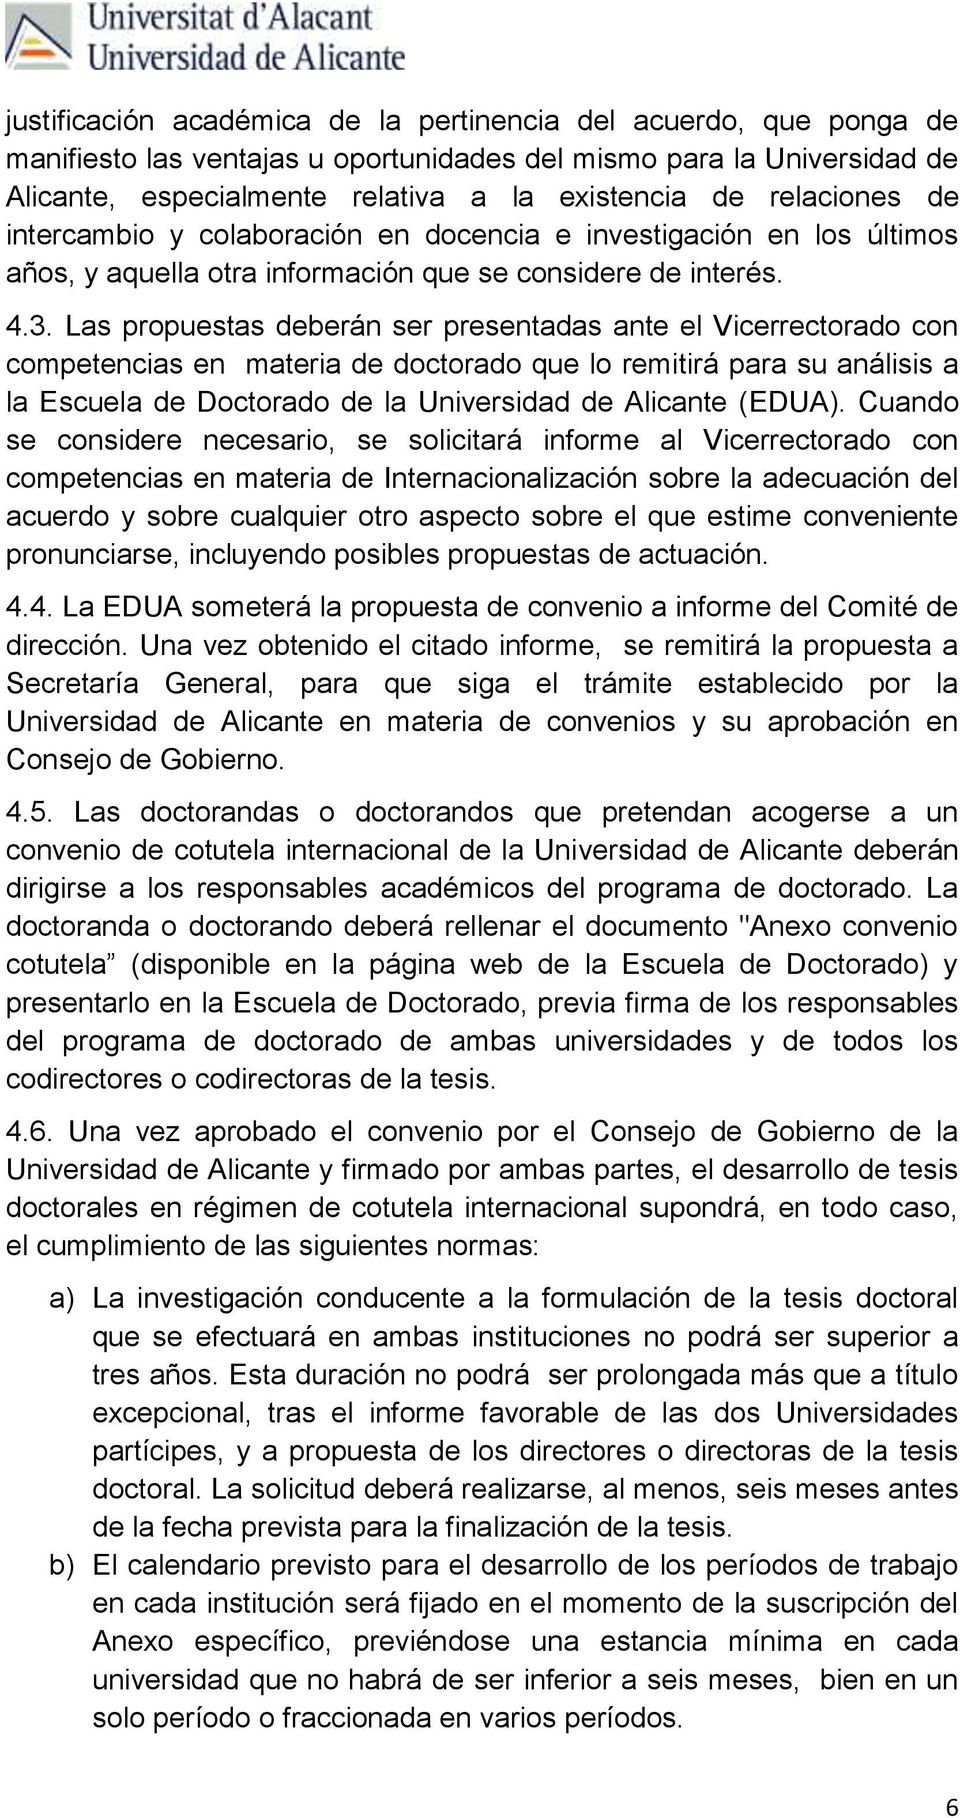 Las propuestas deberán ser presentadas ante el Vicerrectorado con competencias en materia de doctorado que lo remitirá para su análisis a la Escuela de Doctorado de la Universidad de Alicante (EDUA).